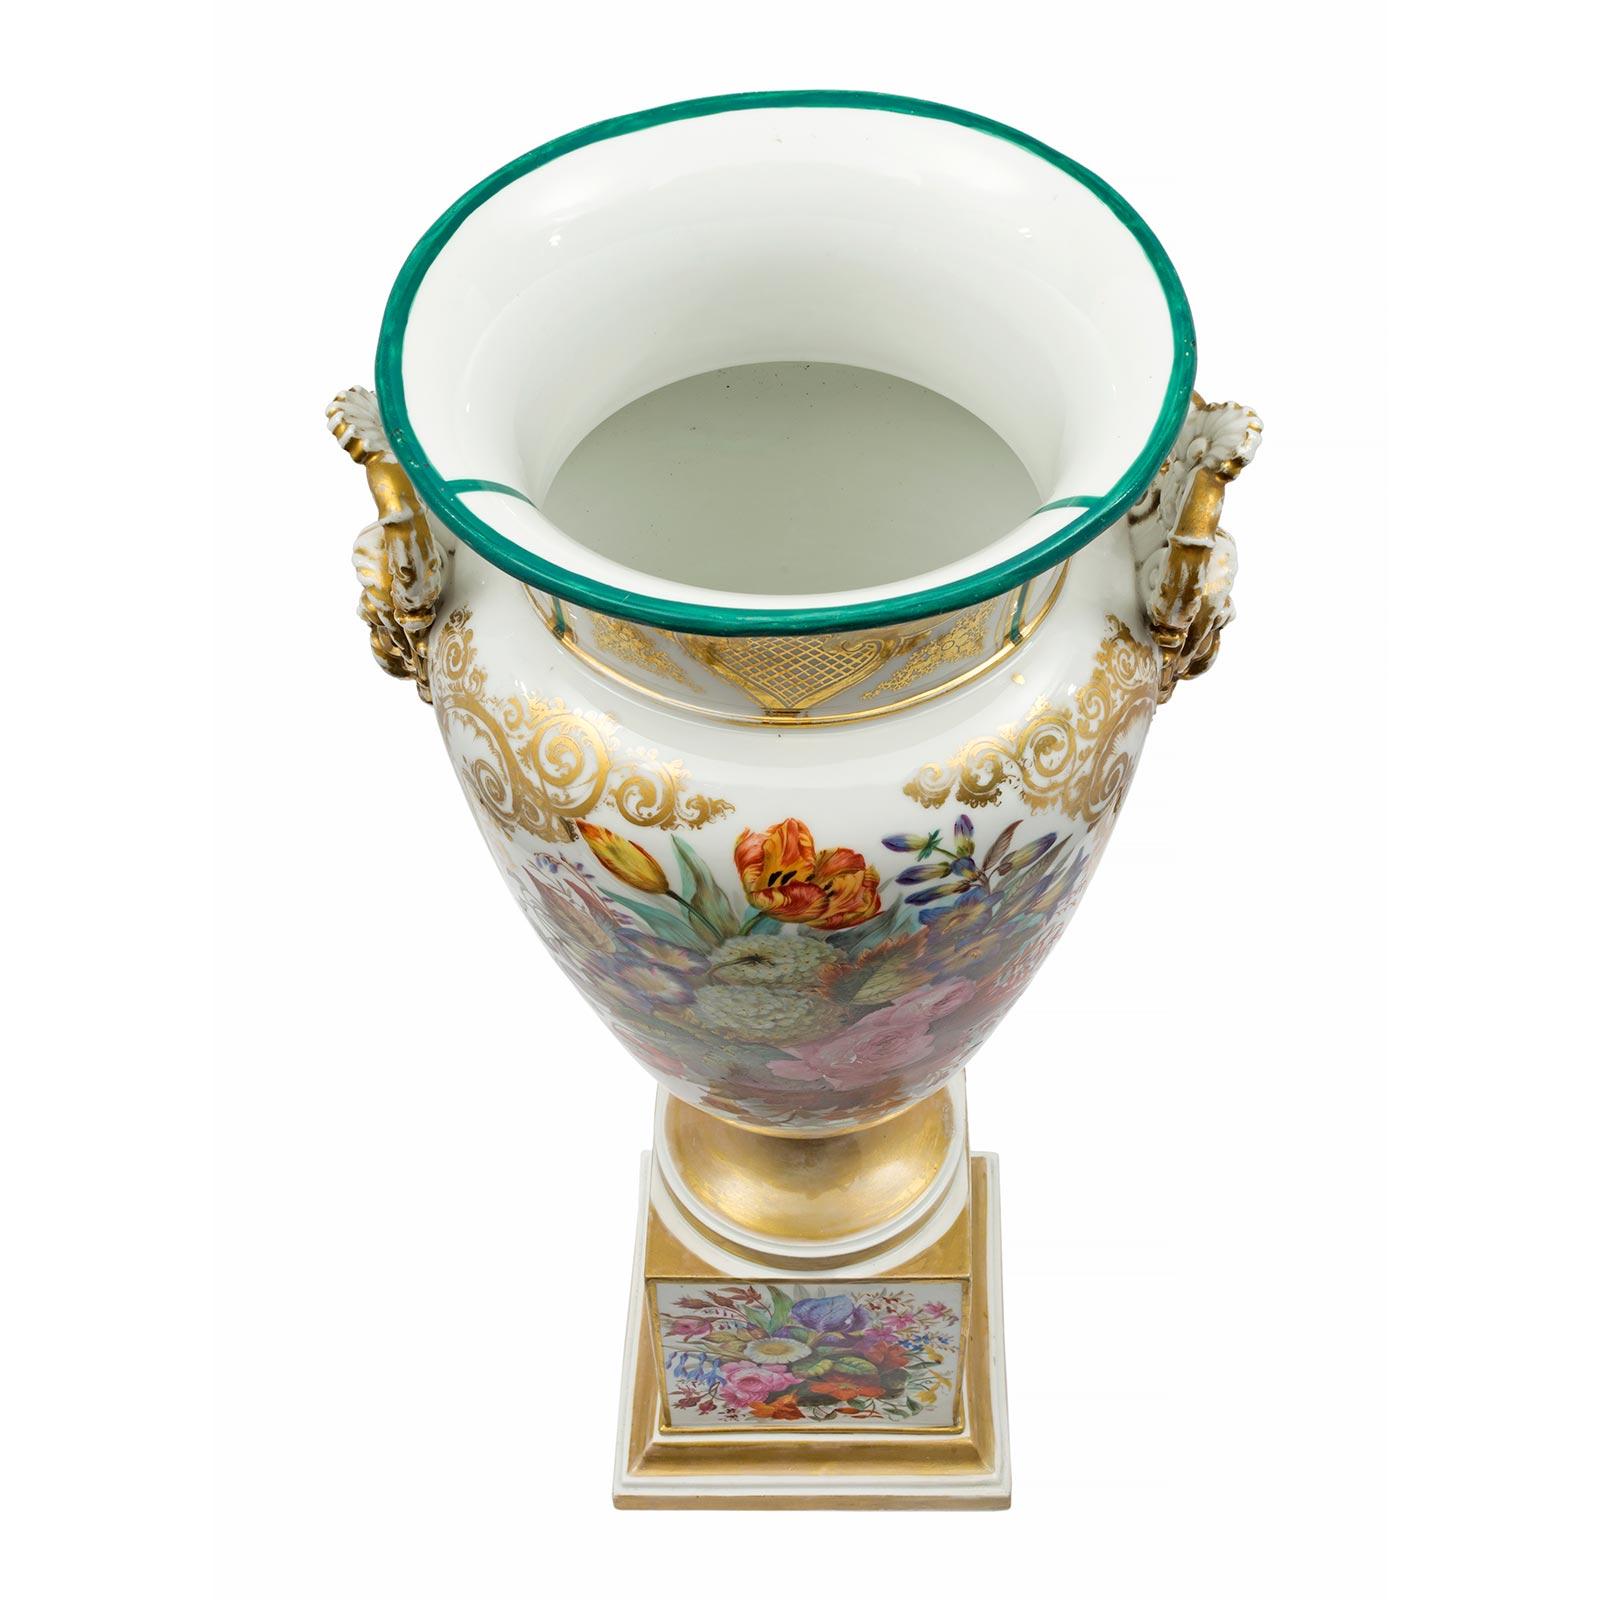 Paire de vases en porcelaine de Sèvres de style Louis XVI du début du XIXe siècle, signés Jacob Petit. La paire est surélevée par une base en bloc carré avec une plinthe mouchetée et une garniture dorée. L'avant et l'arrière de la base sont